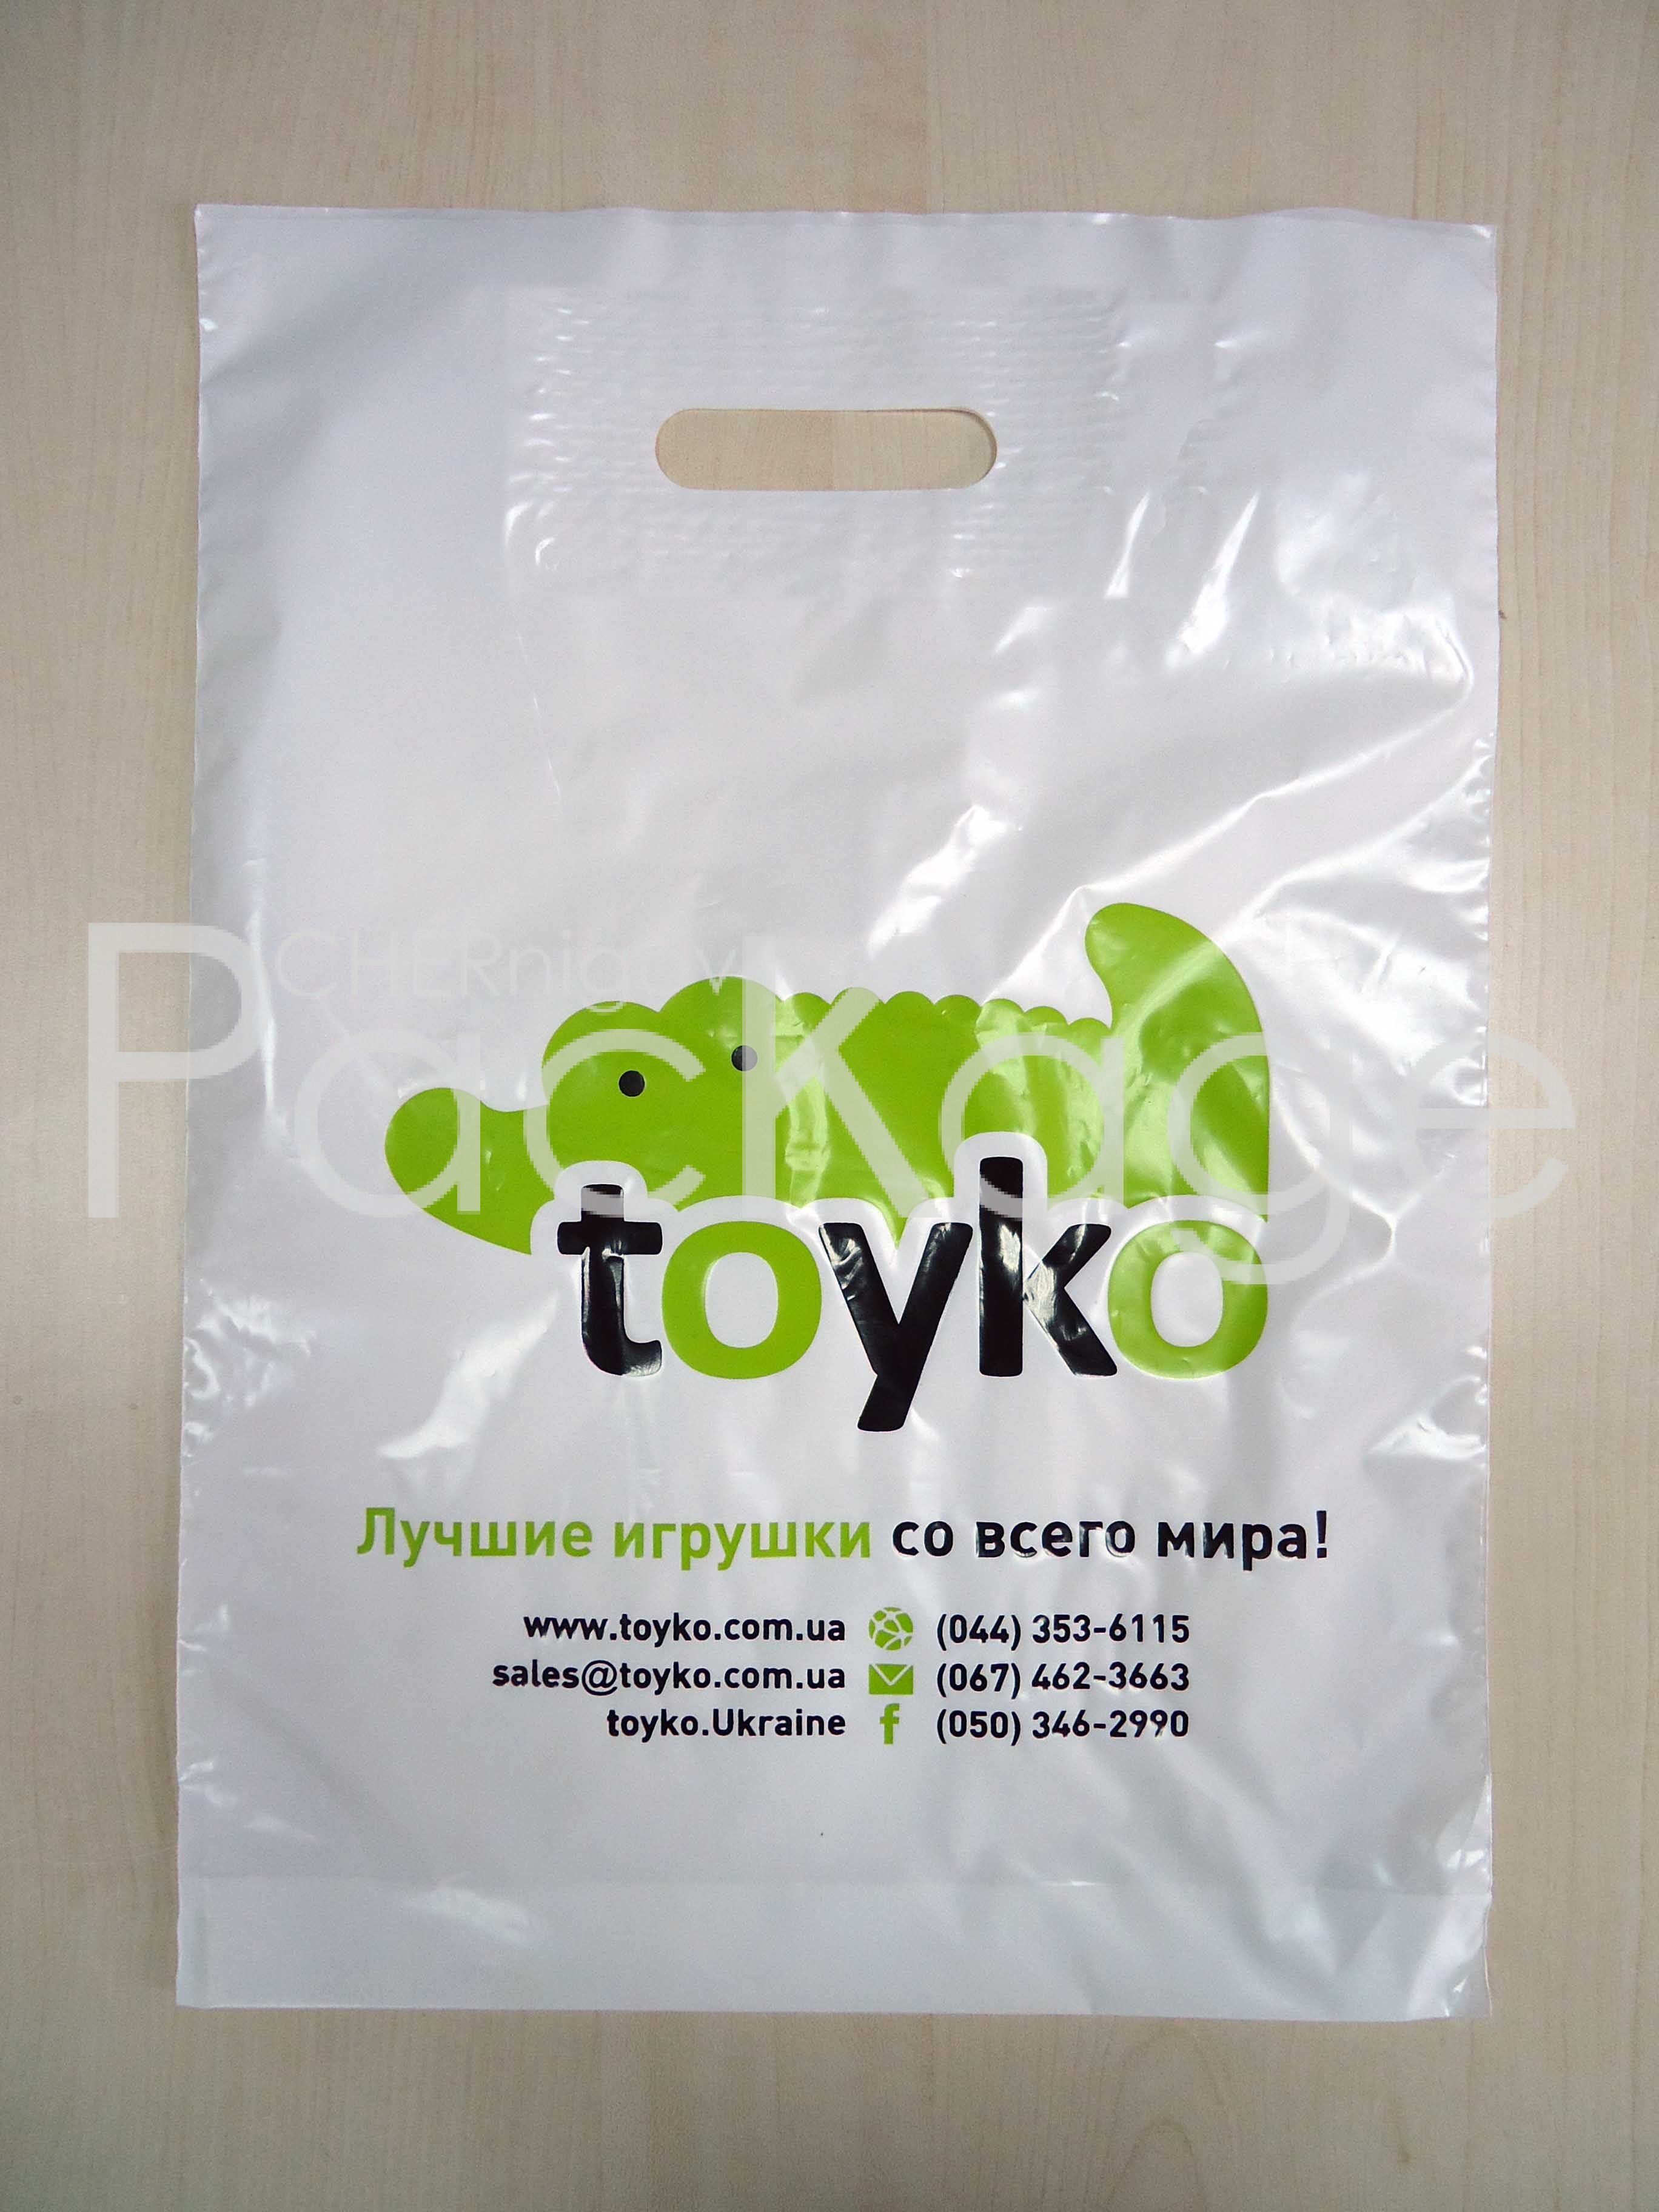 Какую выбрать печать на пакетах в Киеве Chernigov Package - Photo DSC03556